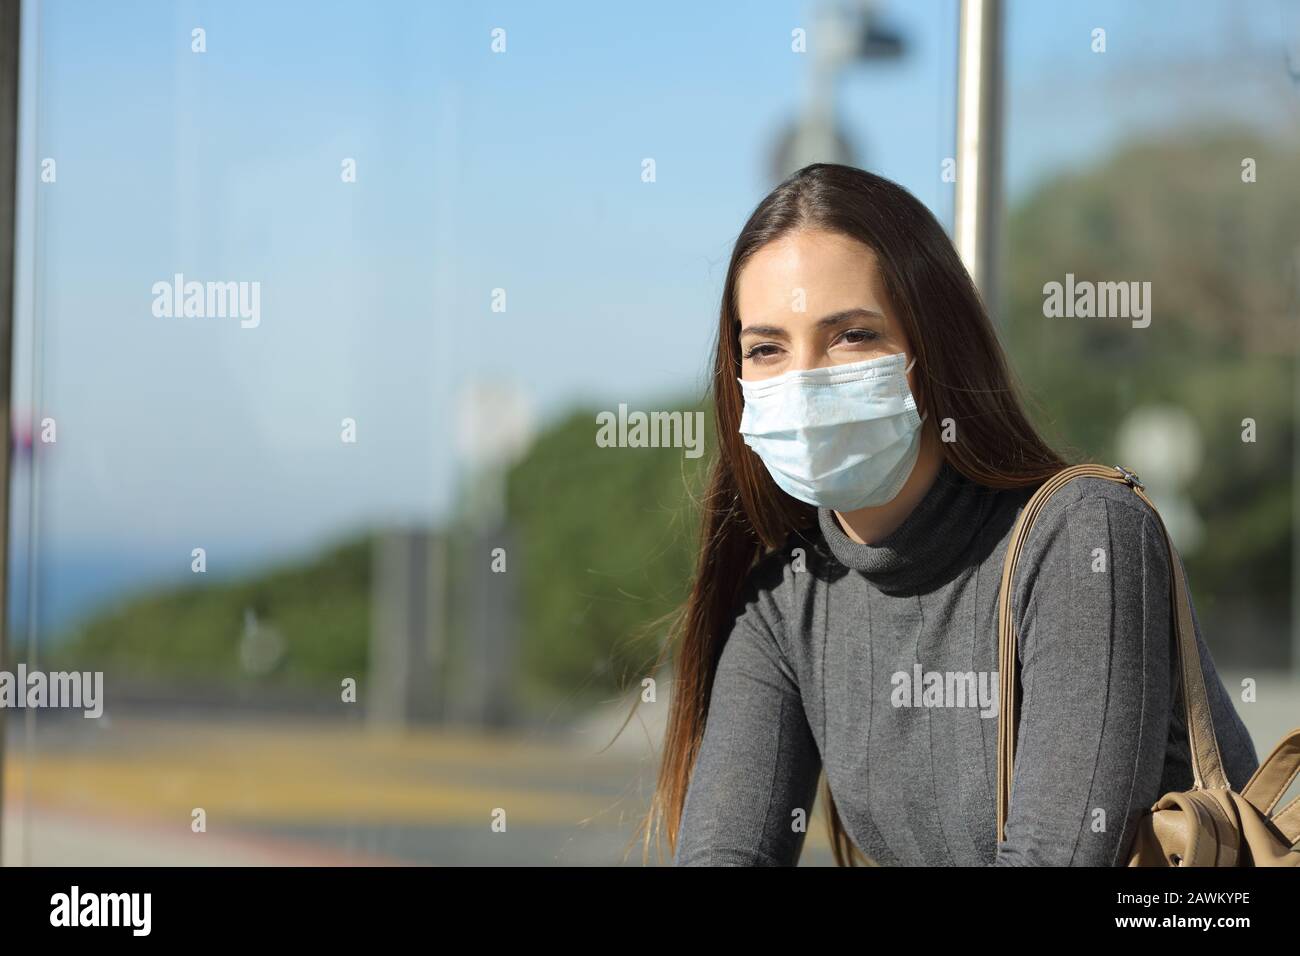 Mujer preocupada con una máscara que previene el contagio esperando en una parada de autobús Foto de stock